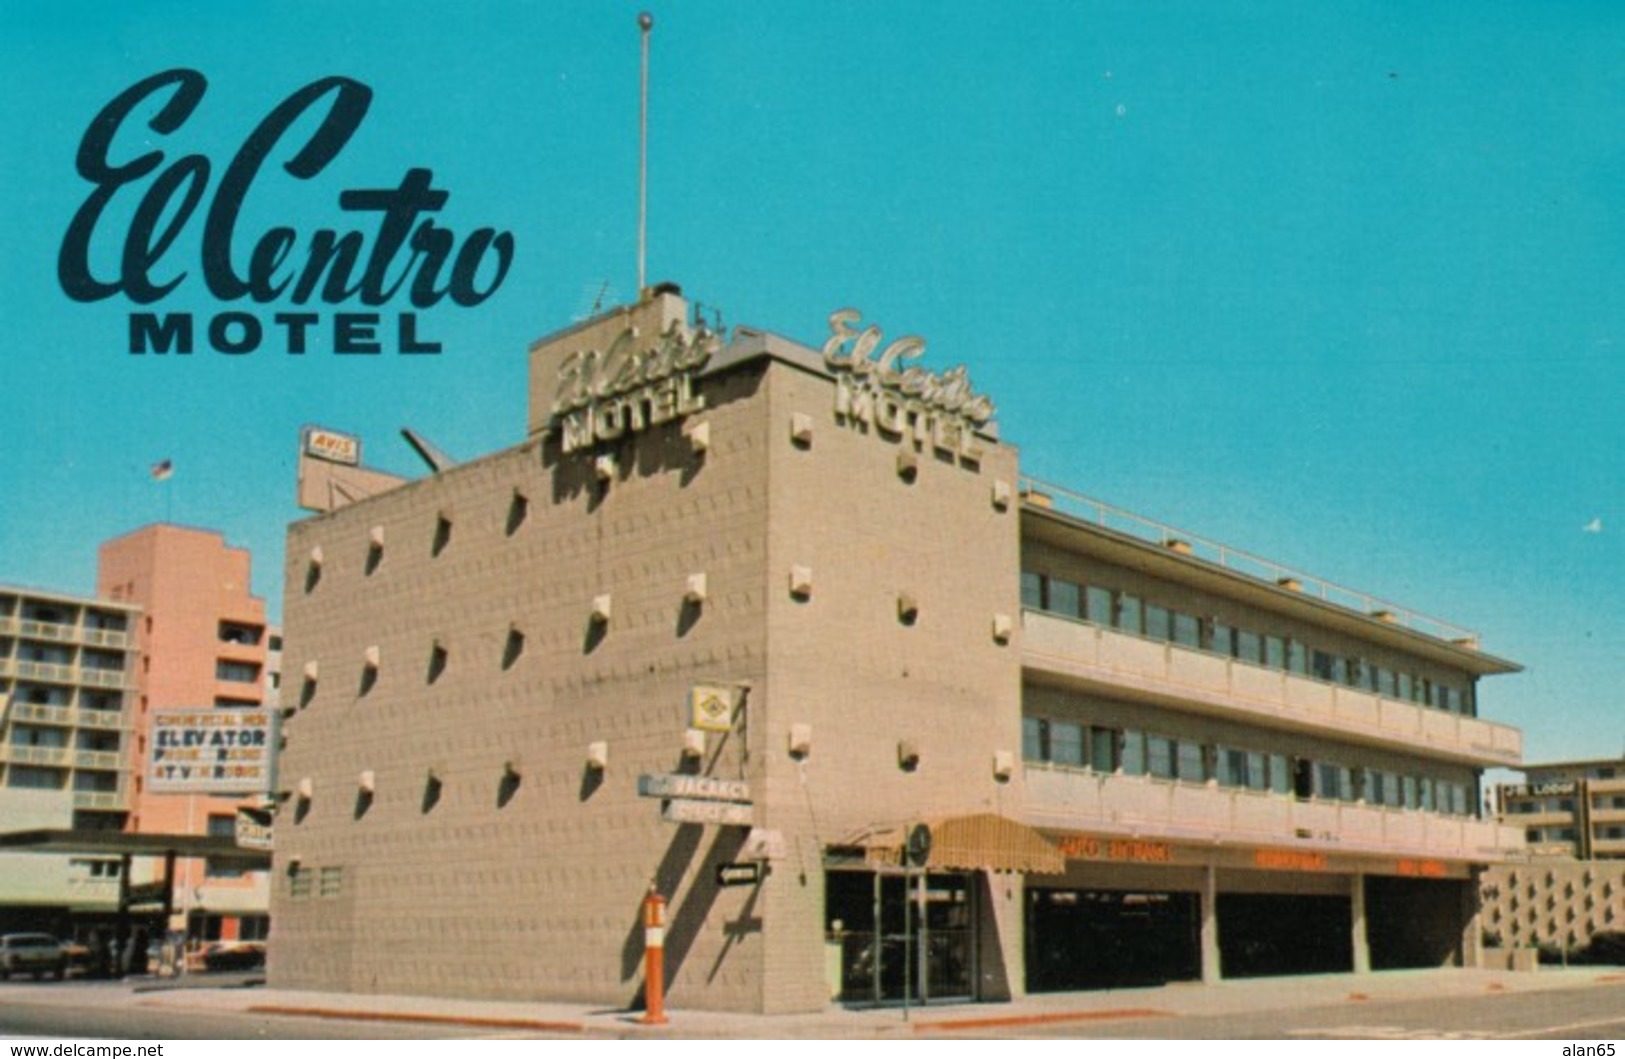 Reno Nevada, El Centro Motel Lodging, C1960s/70s Vintage Postcard - Reno